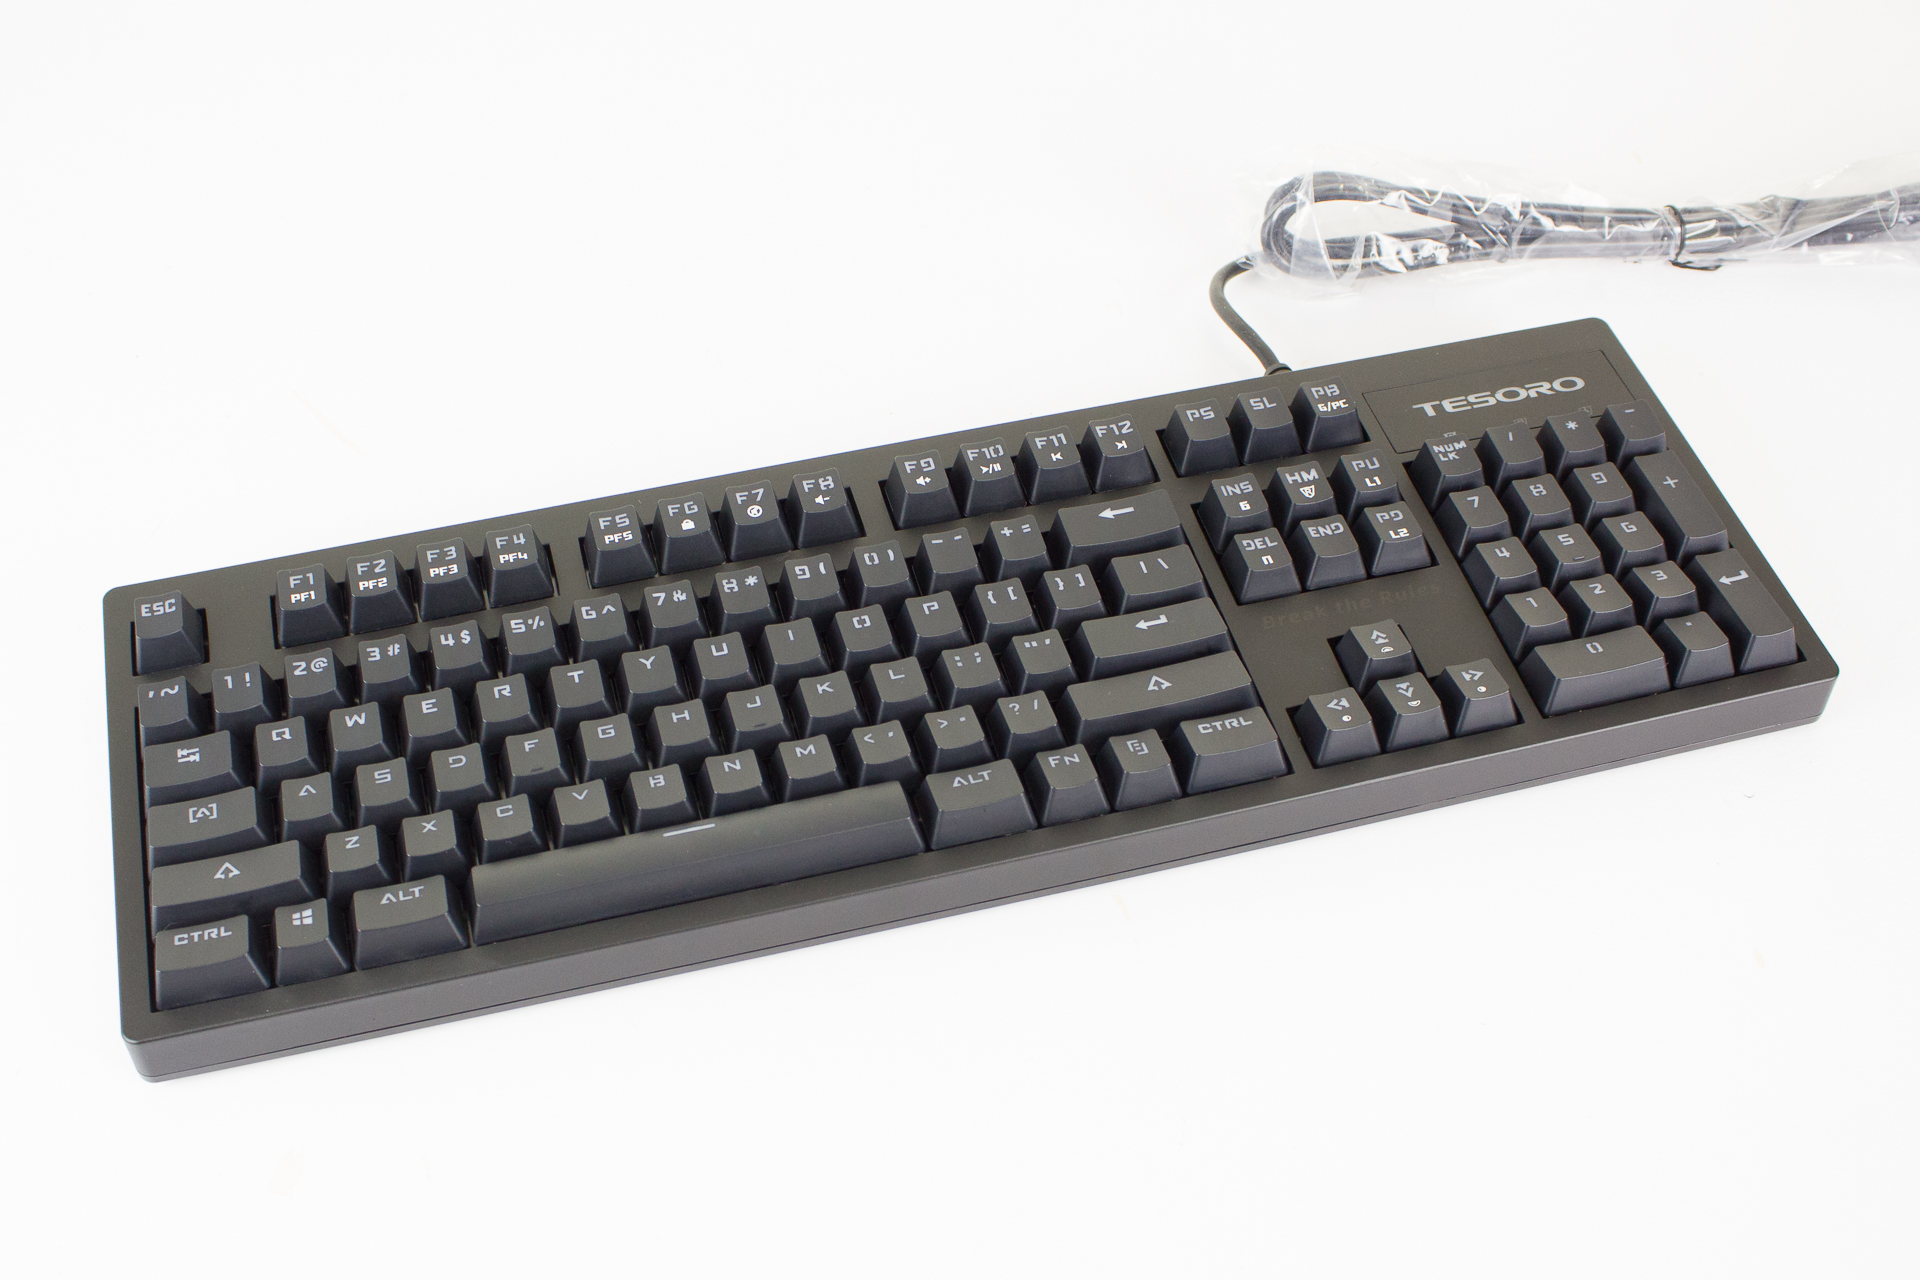 Review: Tesoro Excalibur V2 Mechanical Gaming Keyboard